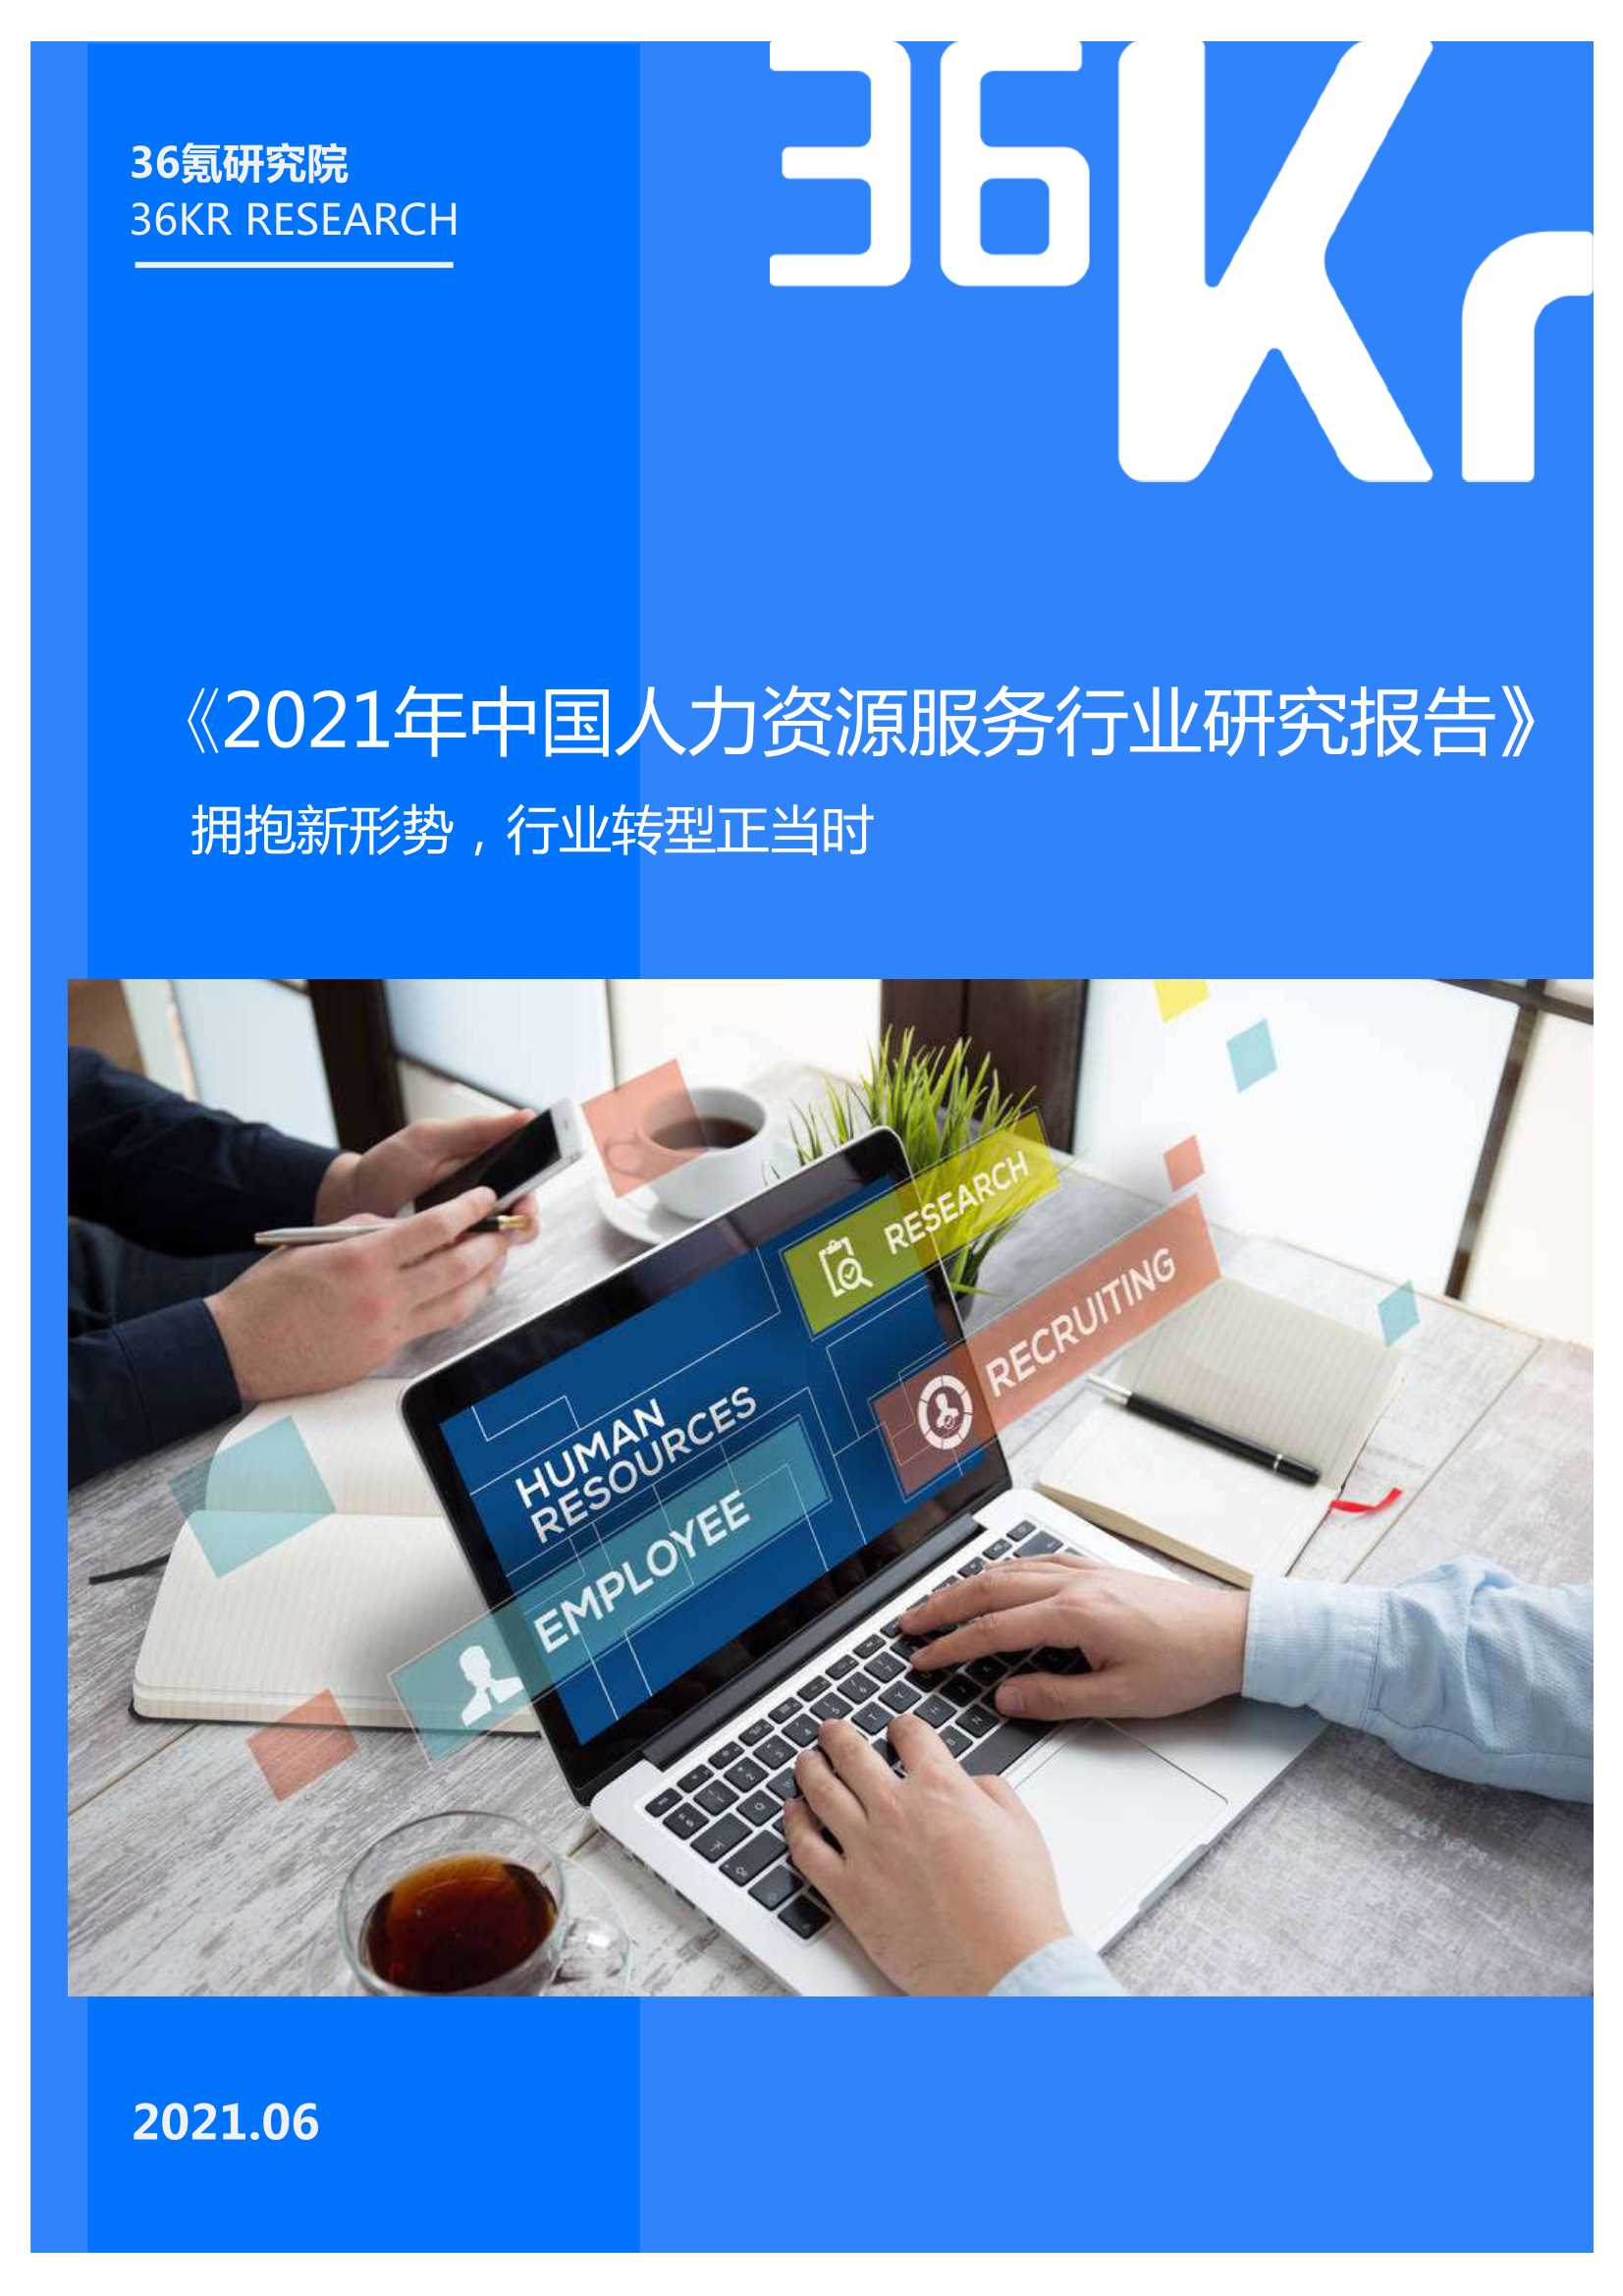 36Kr-2021年中国人力资源服务行业研究报告-2021.06-39页